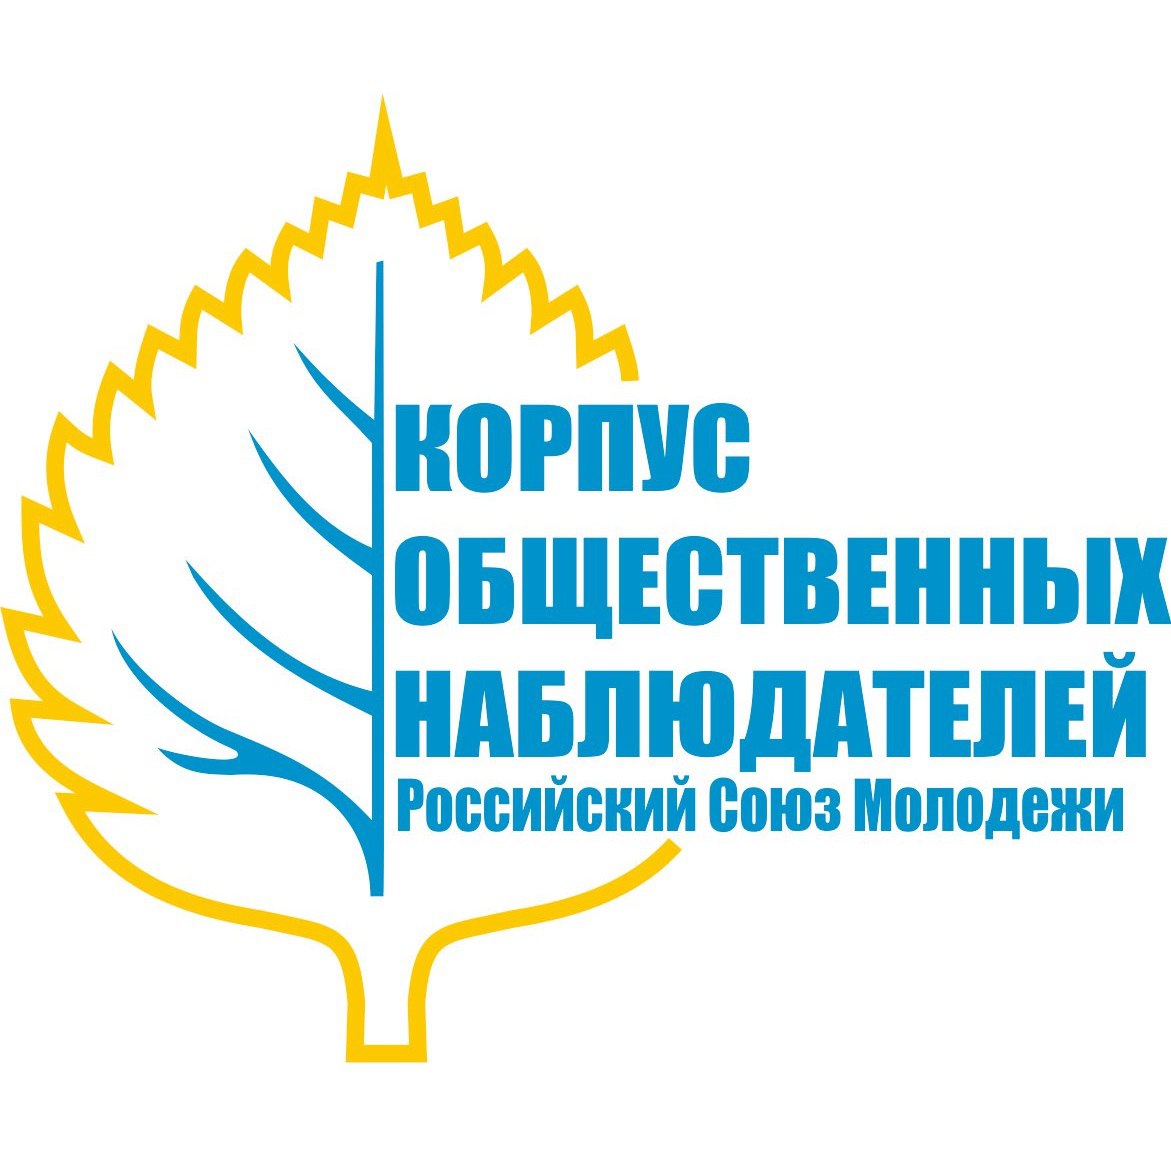 Корпус общественных наблюдателей РСМ Московской области